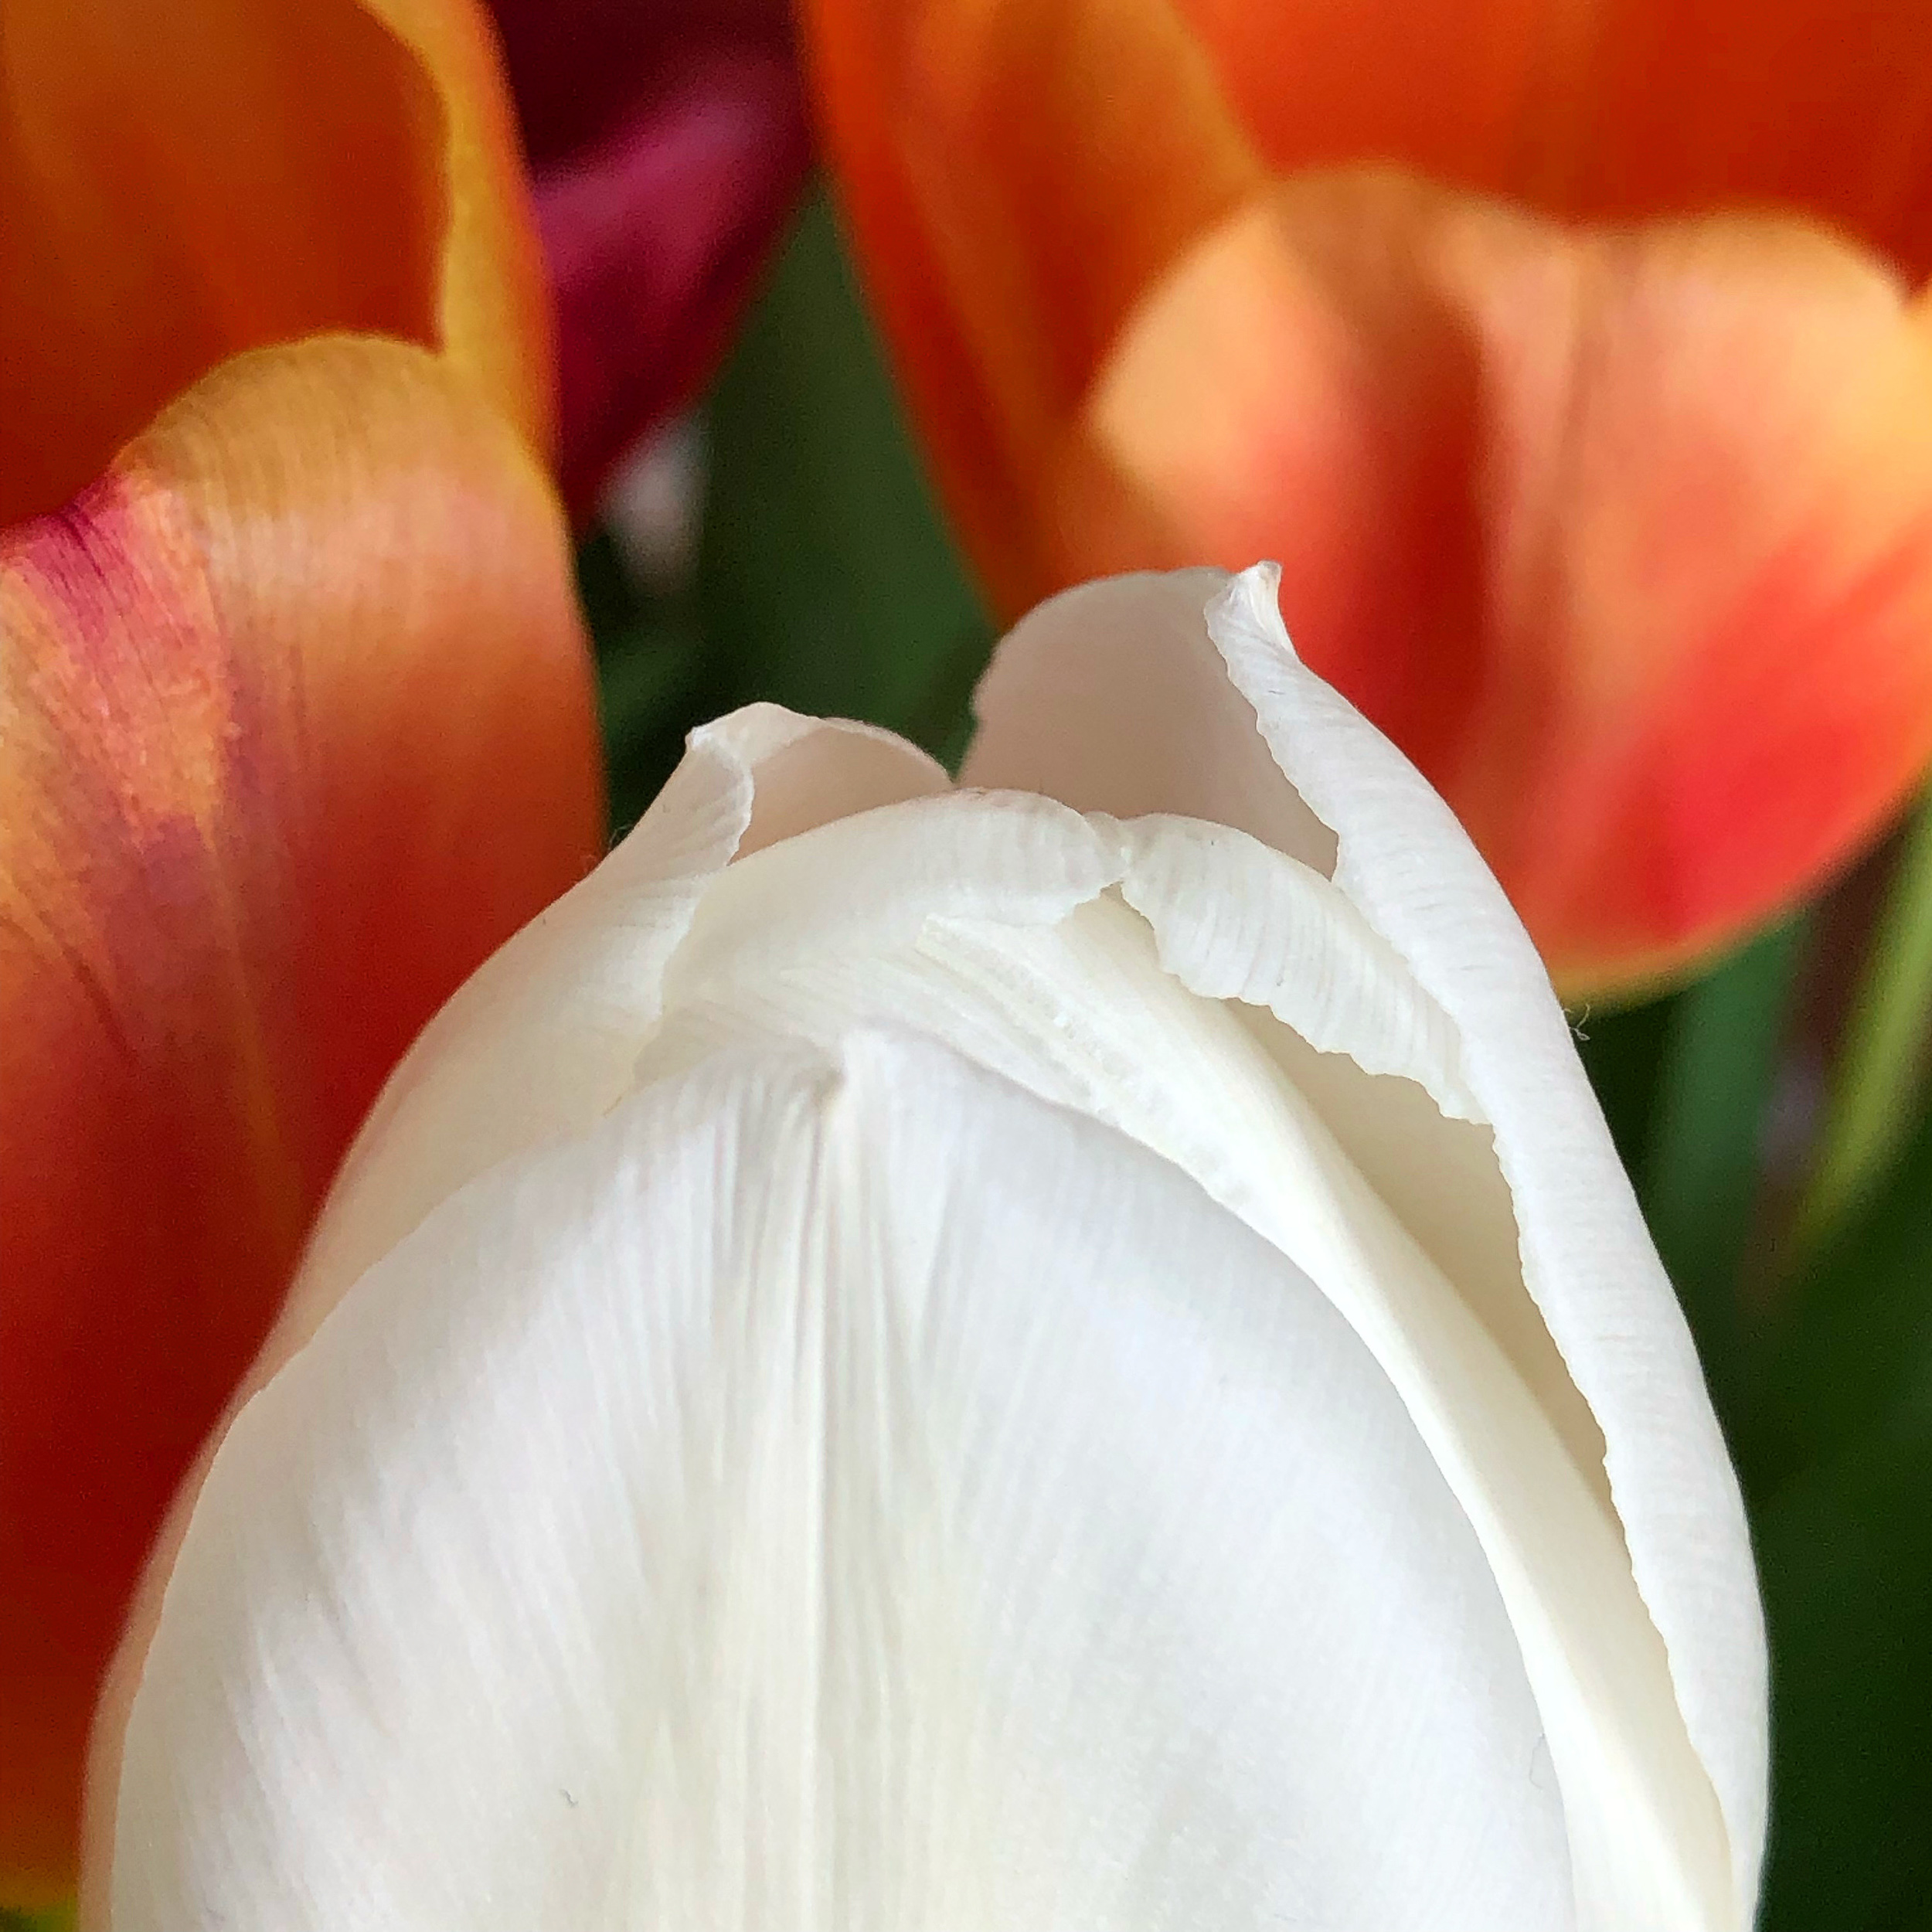 Tulip tips